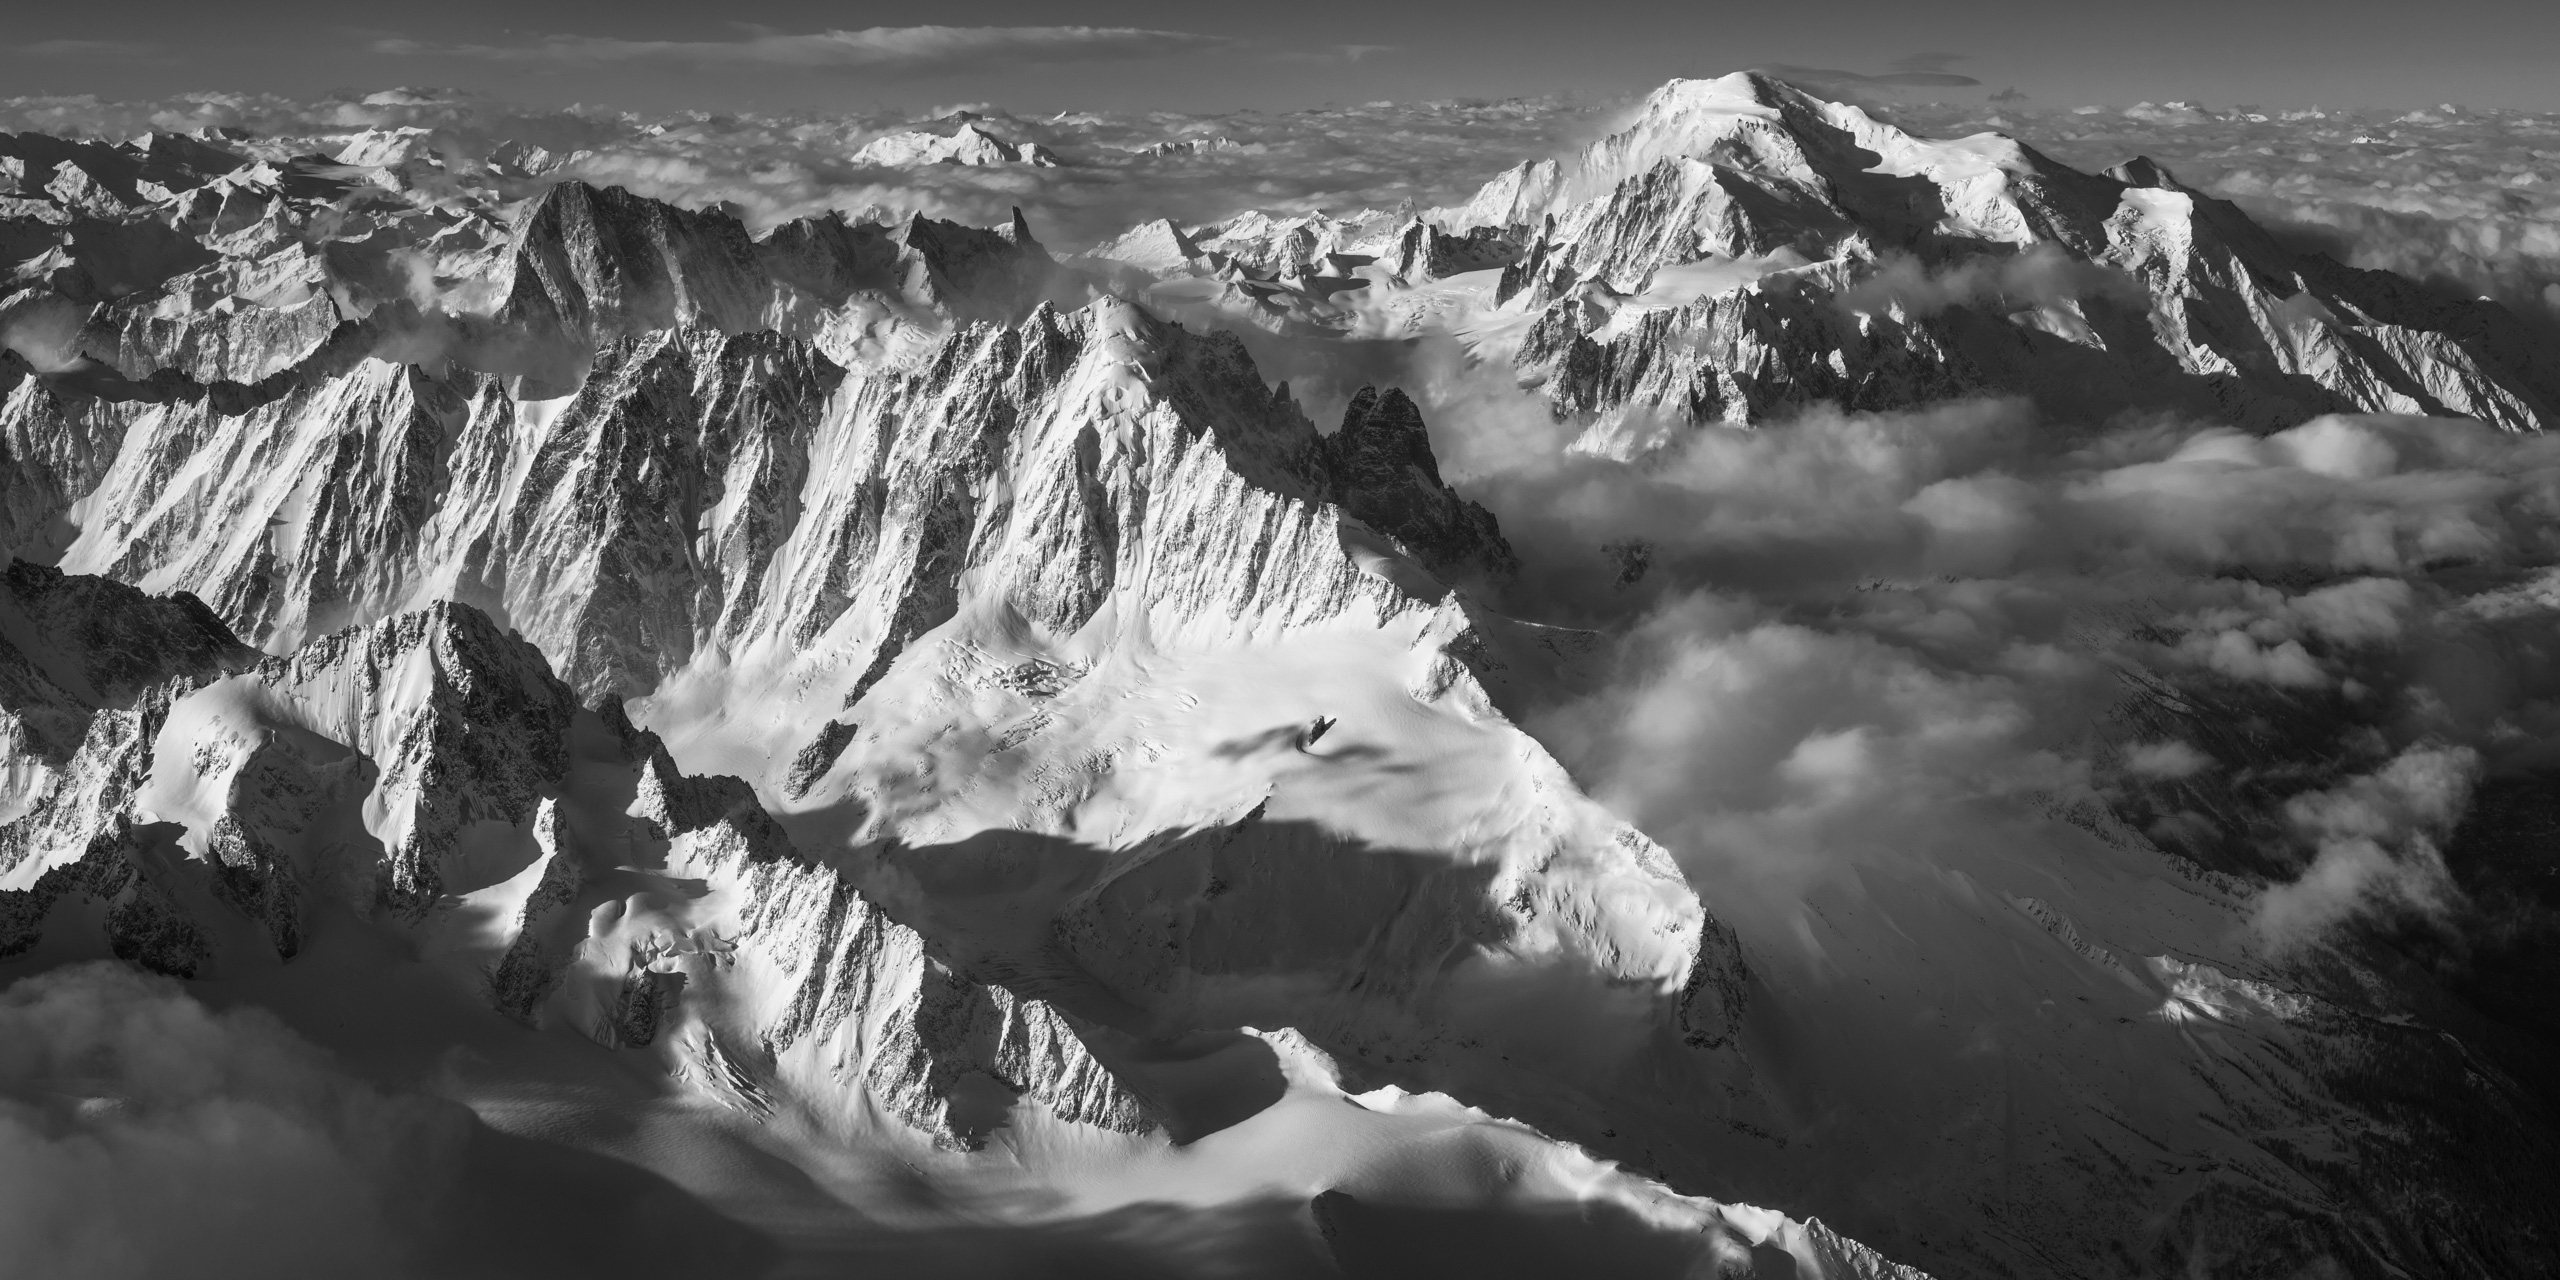 Mont Blanc Massif - mont blanc photo -chamonix - panorama mont blanc massif - mont blanc helicopter photo